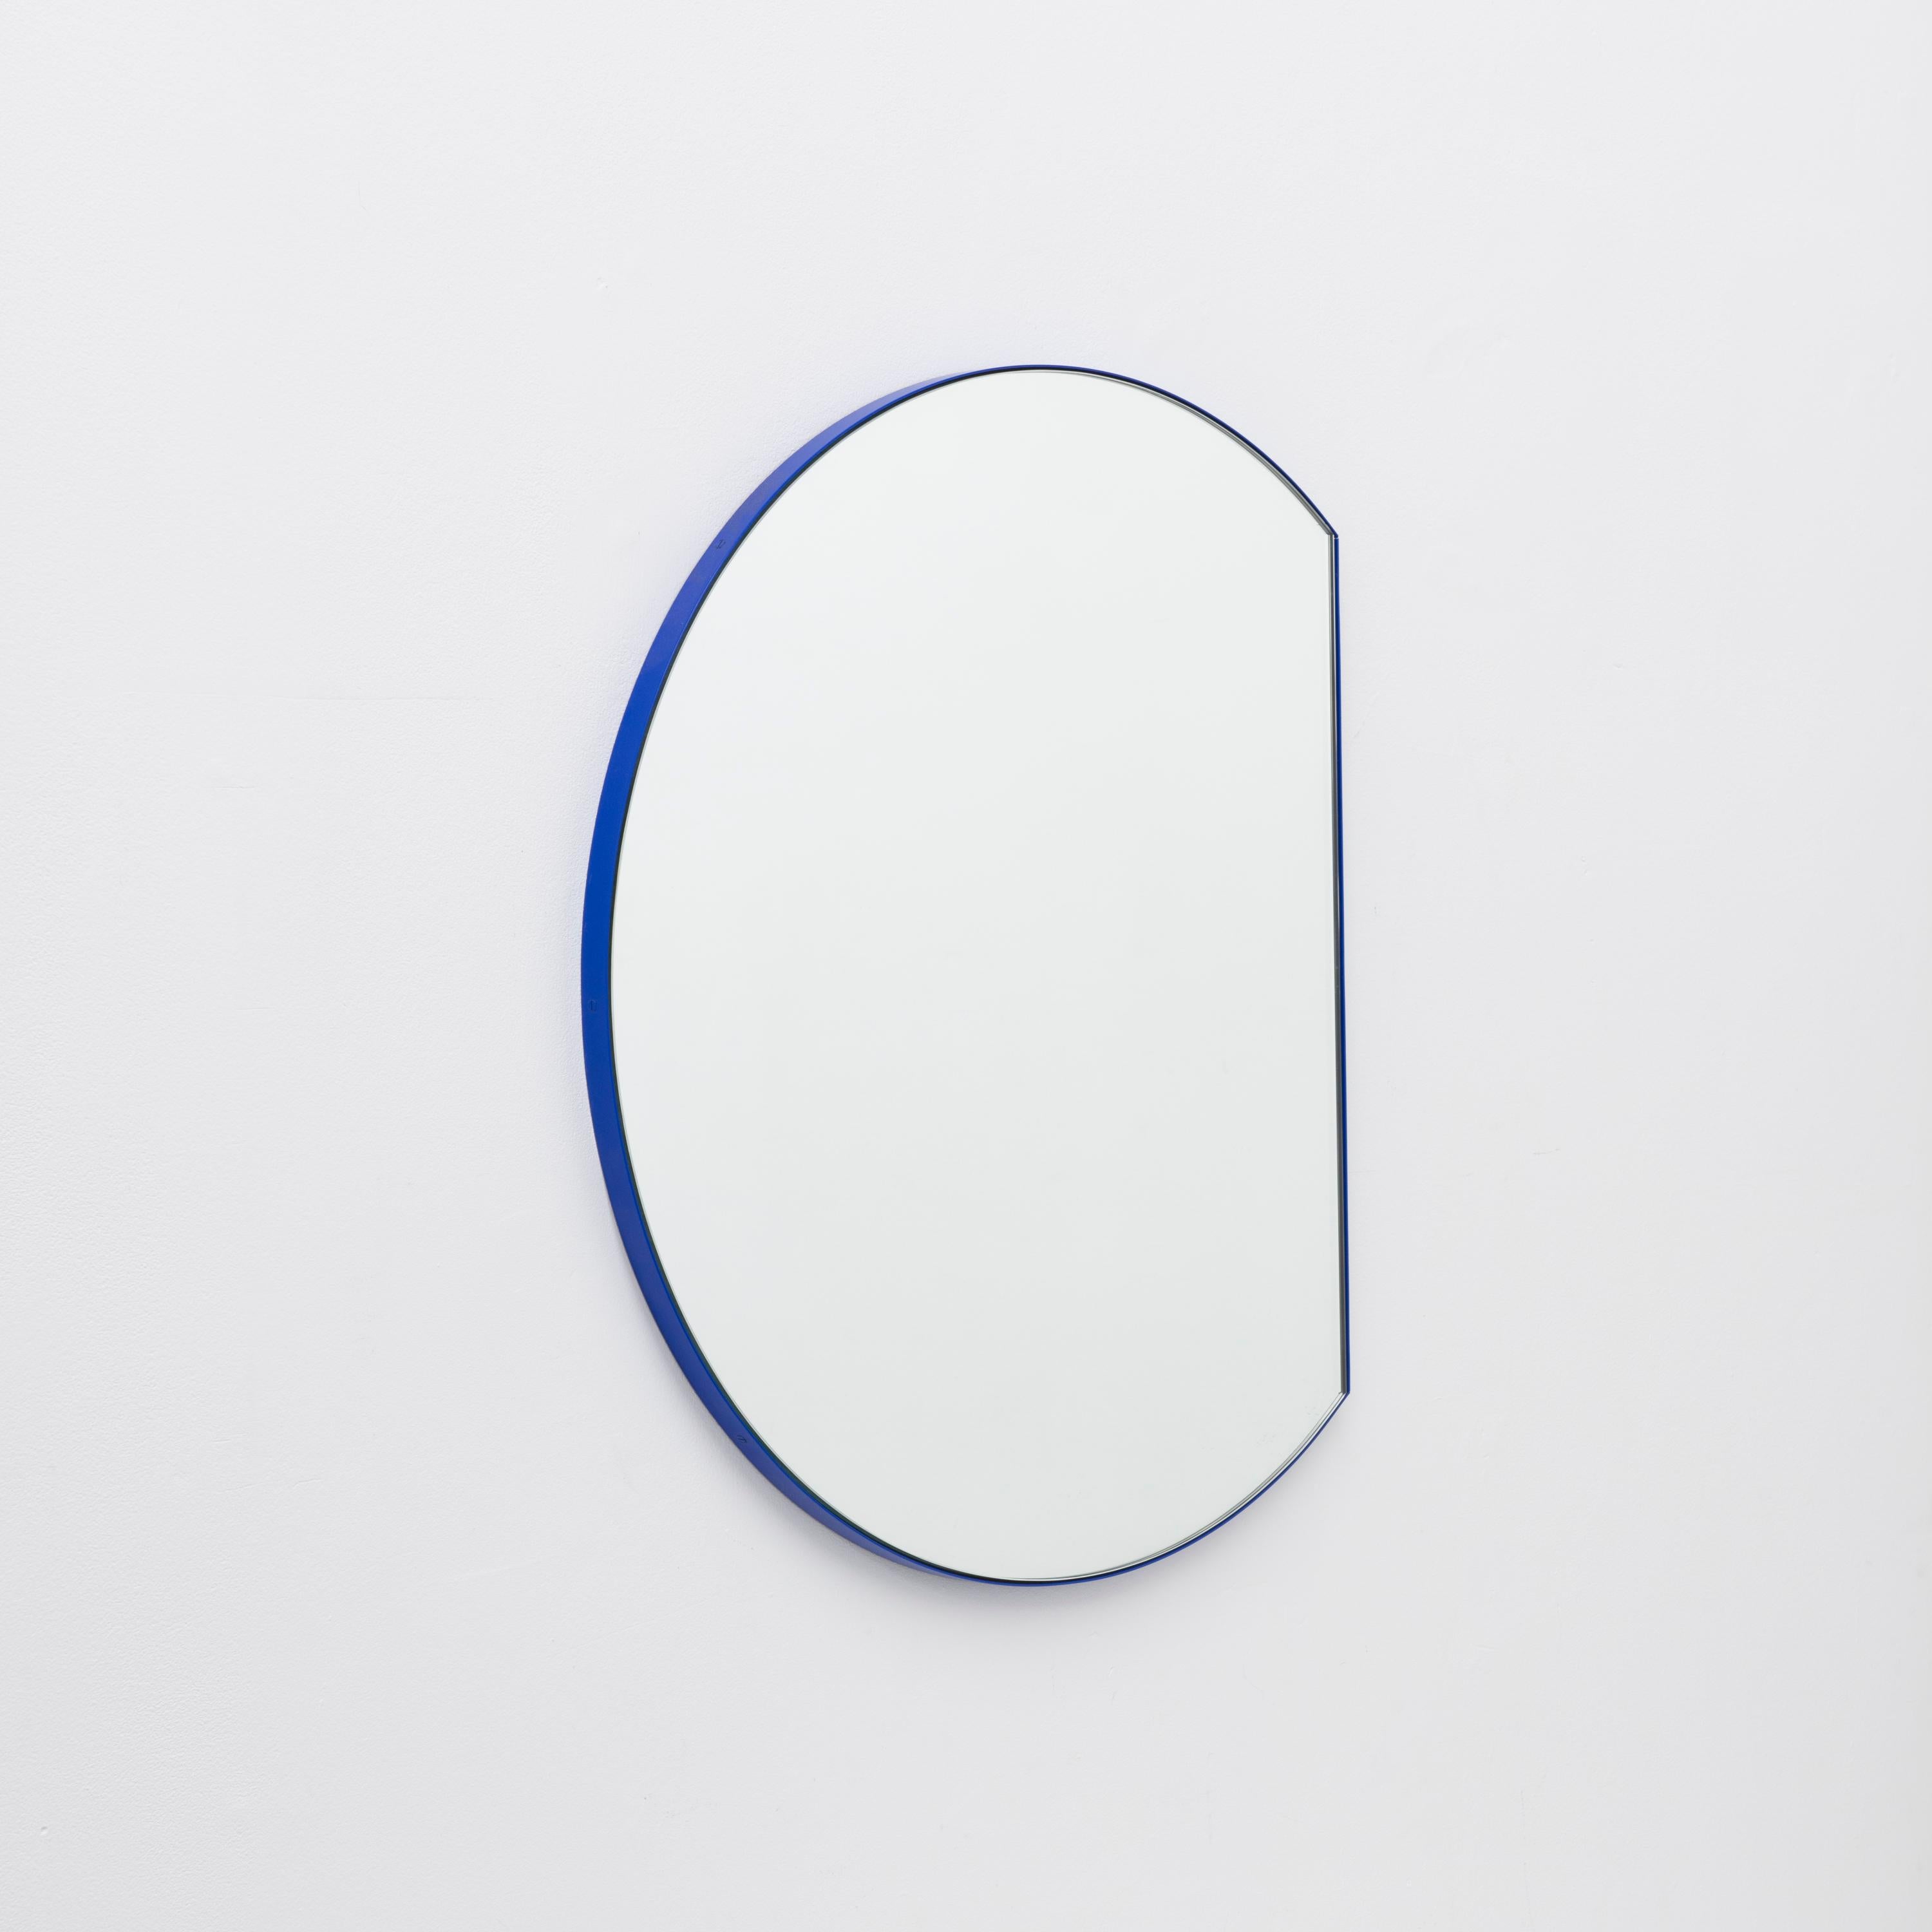 Orbis Trecus Abgeschnittener kreisförmiger moderner Spiegel mit blauem Rahmen, klein (Britisch) im Angebot